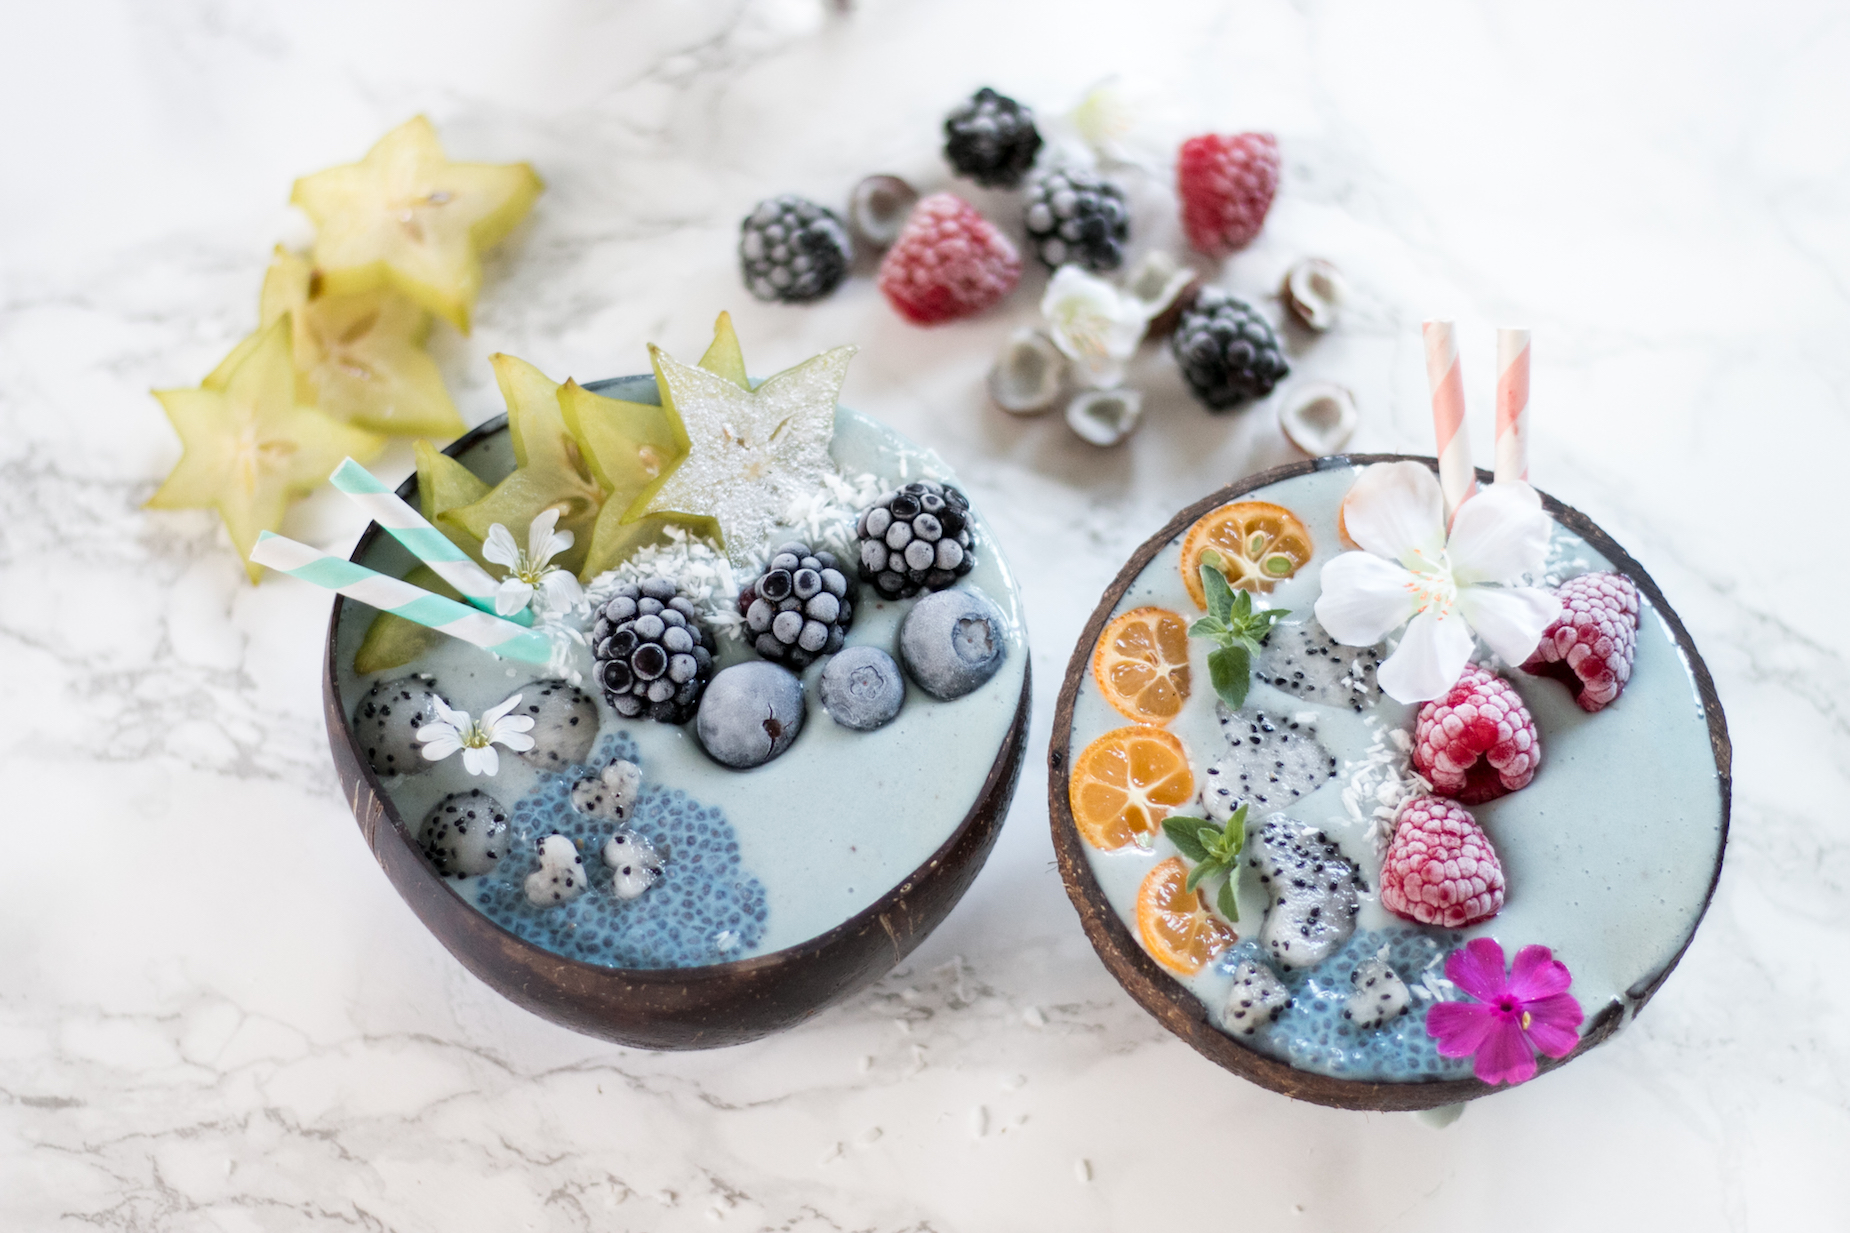 blaue Smoothie Bowl perfekt als Frühstück oder Dessert an heißen Sommertagen. Sieht nicht nur hübsch aus, sondern ist auch noch richtig gesund!